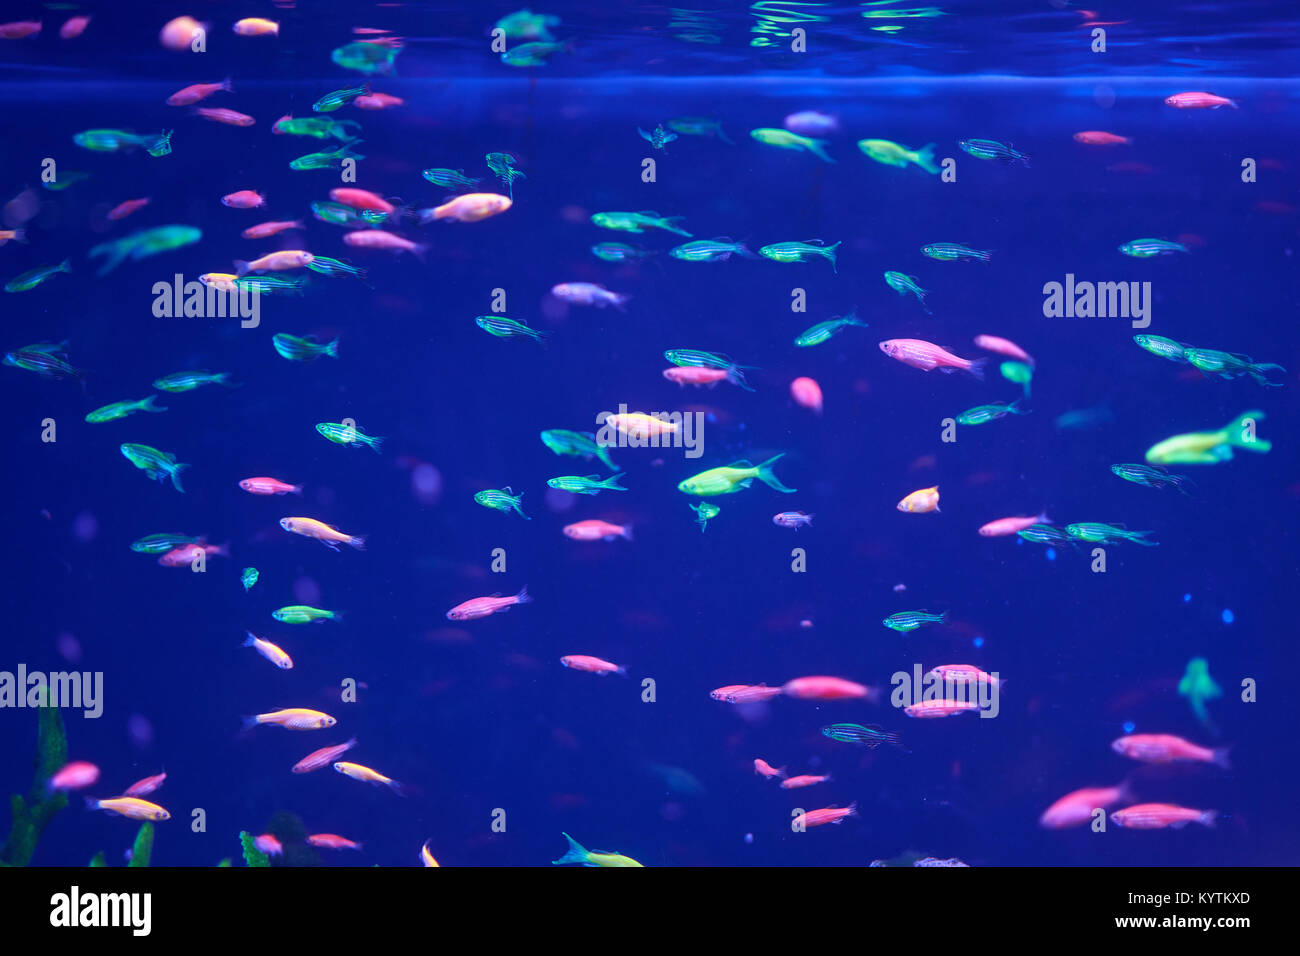 Molti luminose Danio pesci in acqua blu Foto Stock